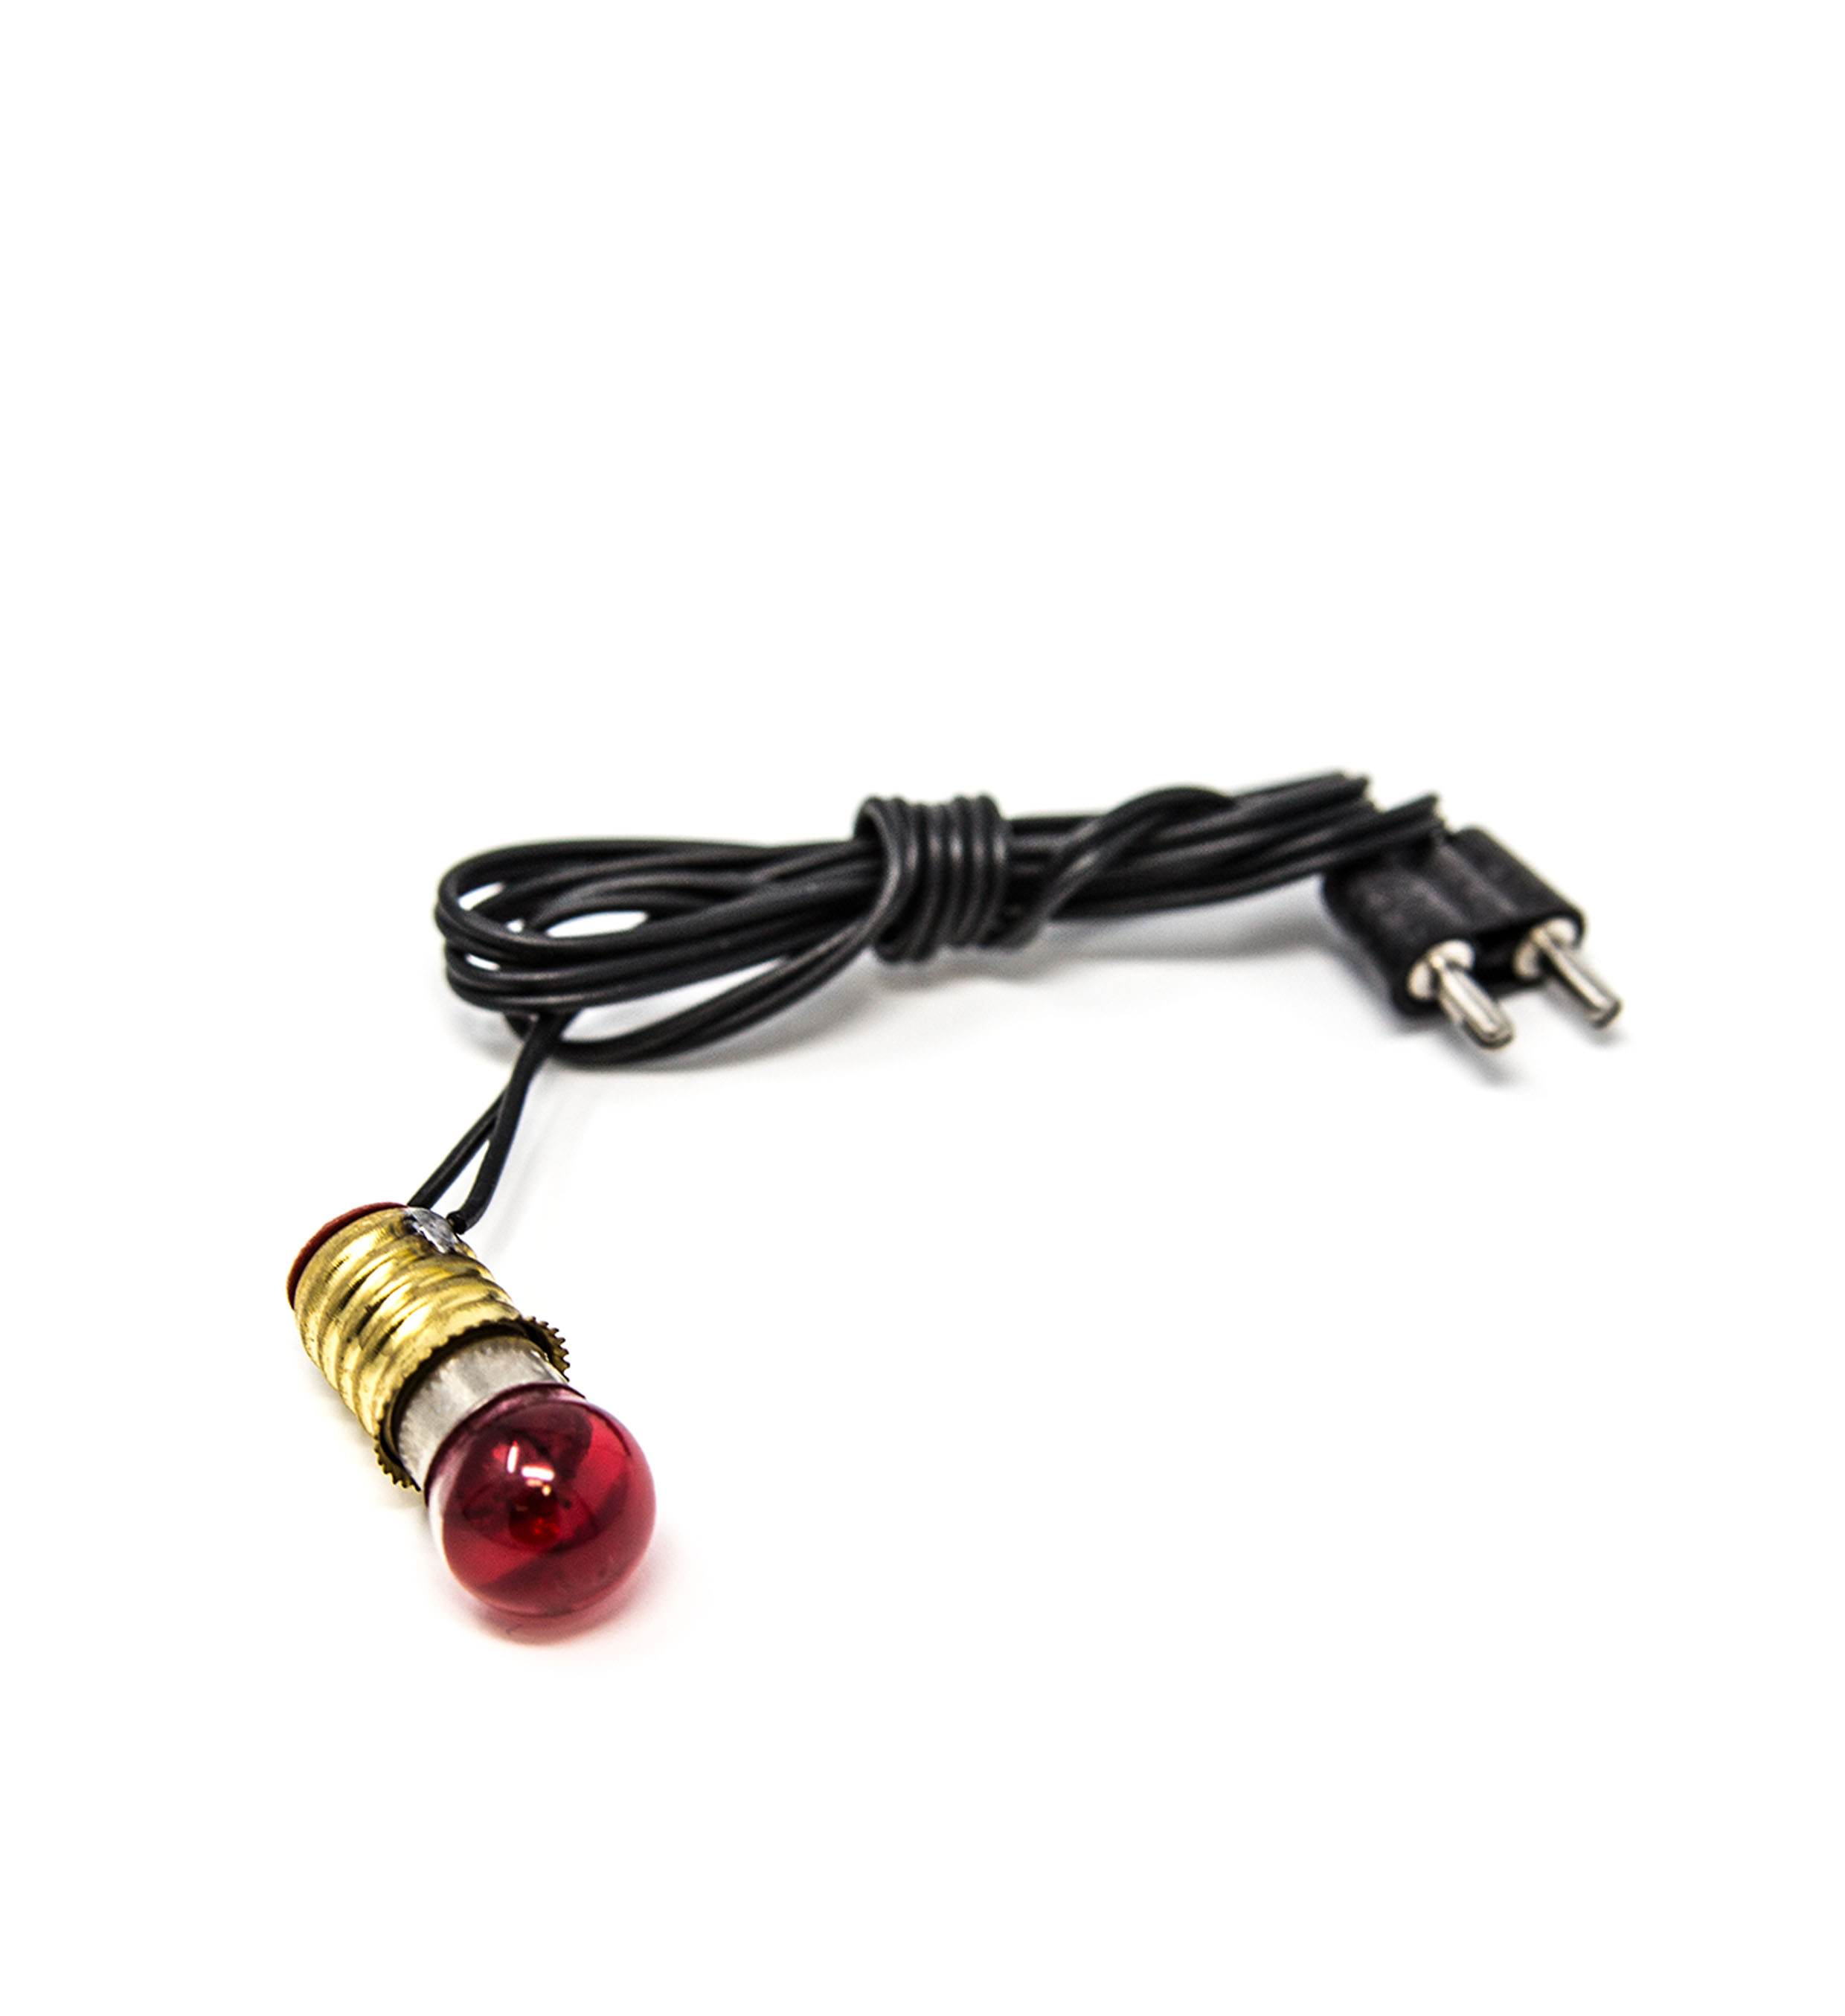 Krippenbeleuchtung Kugellampe mit Kabel und Stecker, rot